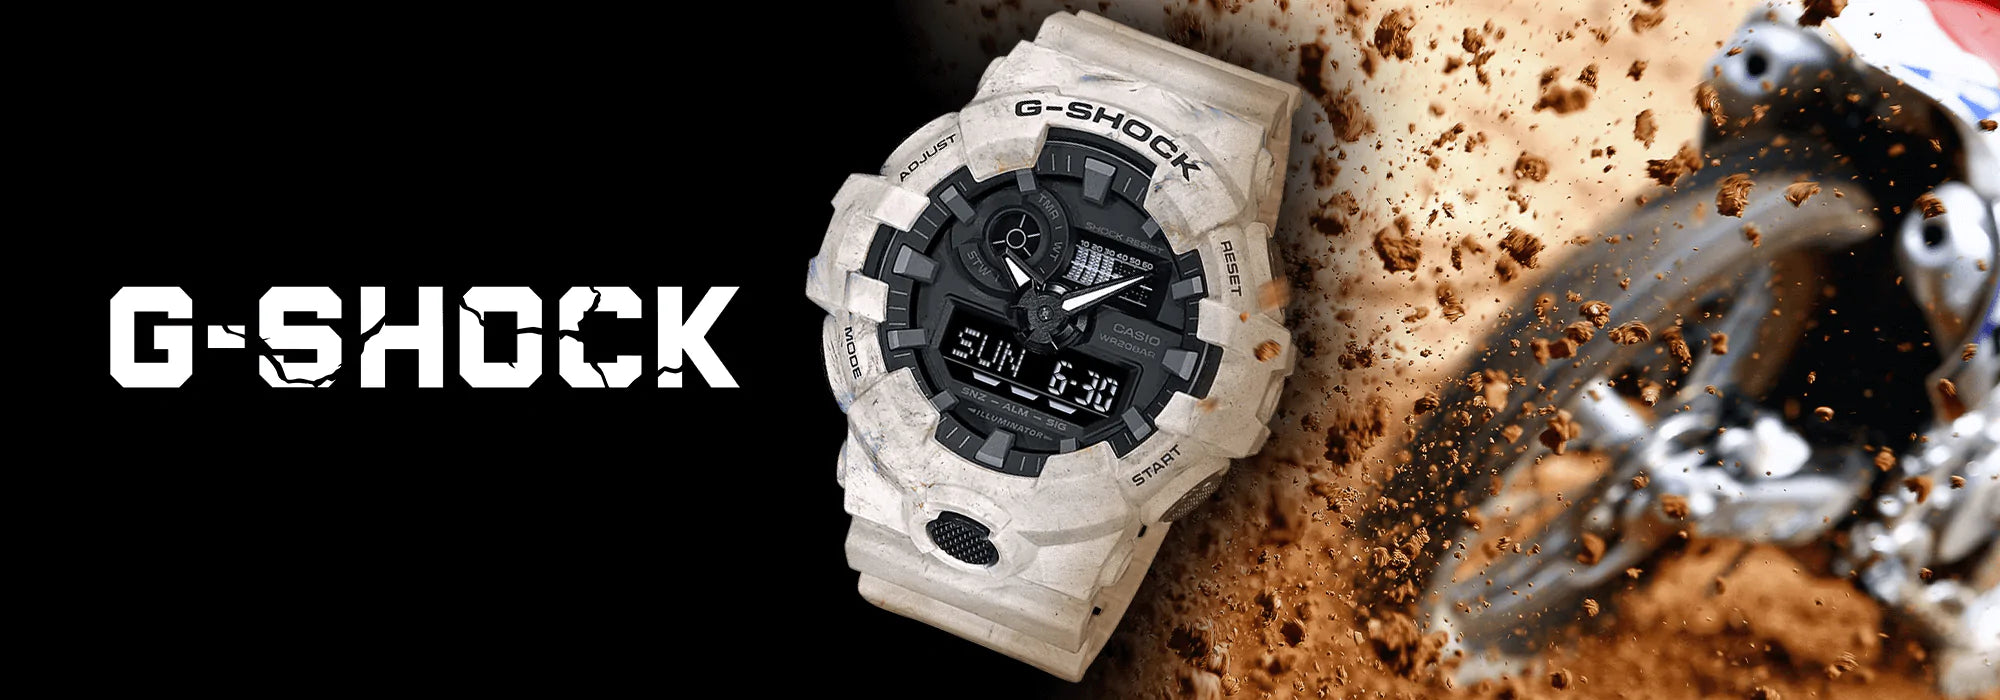 Casio G Shock Watches